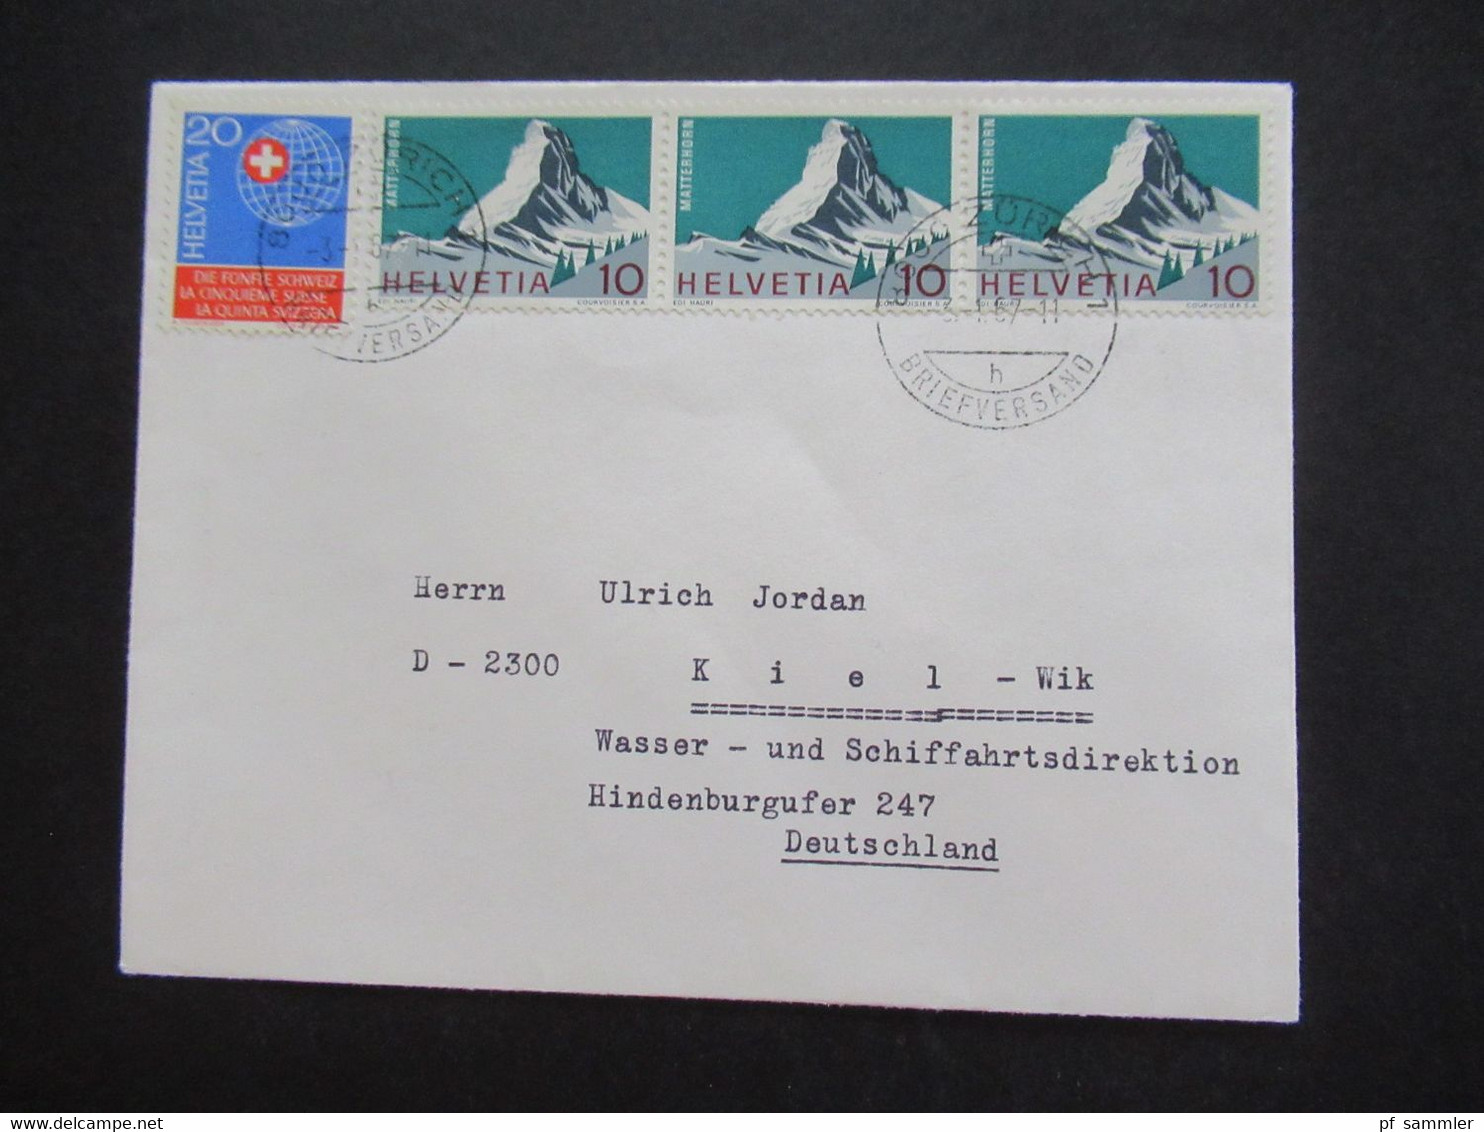 Schweiz 1990er Jahre Auslandsbriefe / A-Post auch Pro Juventute insgesamt 35 Belege / Stöberposten